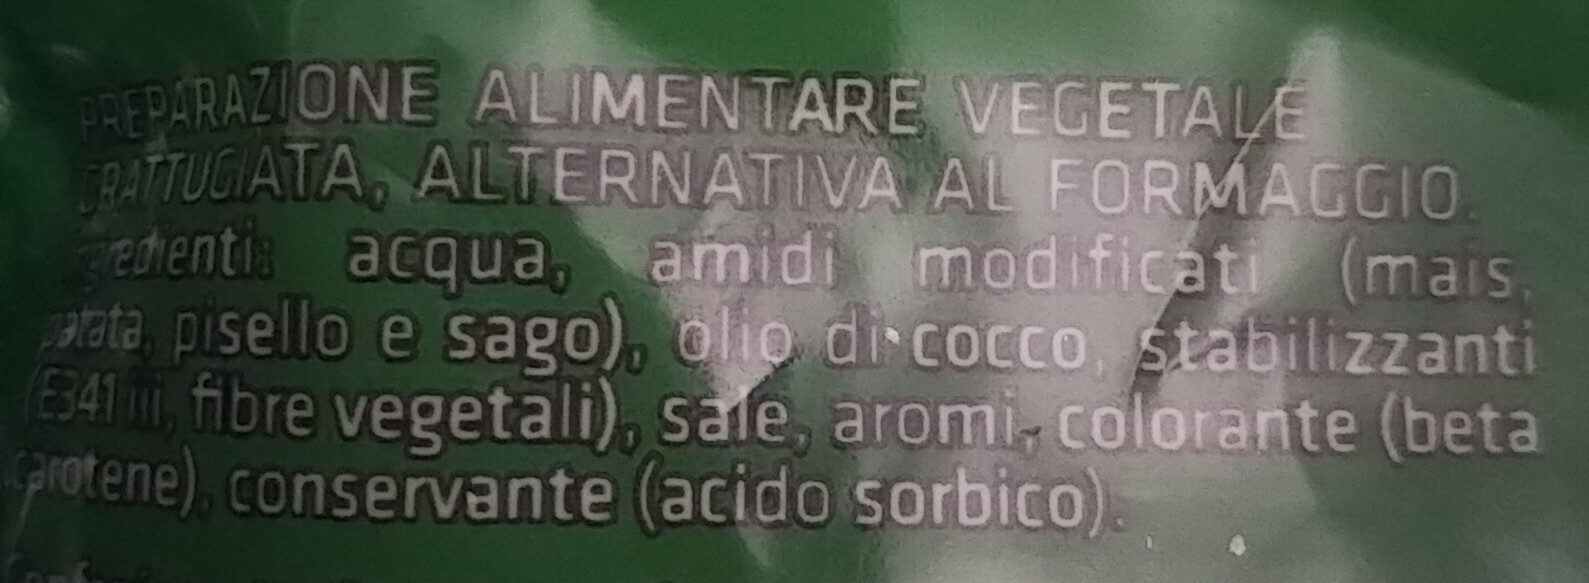 Grattì - Ingredients - it